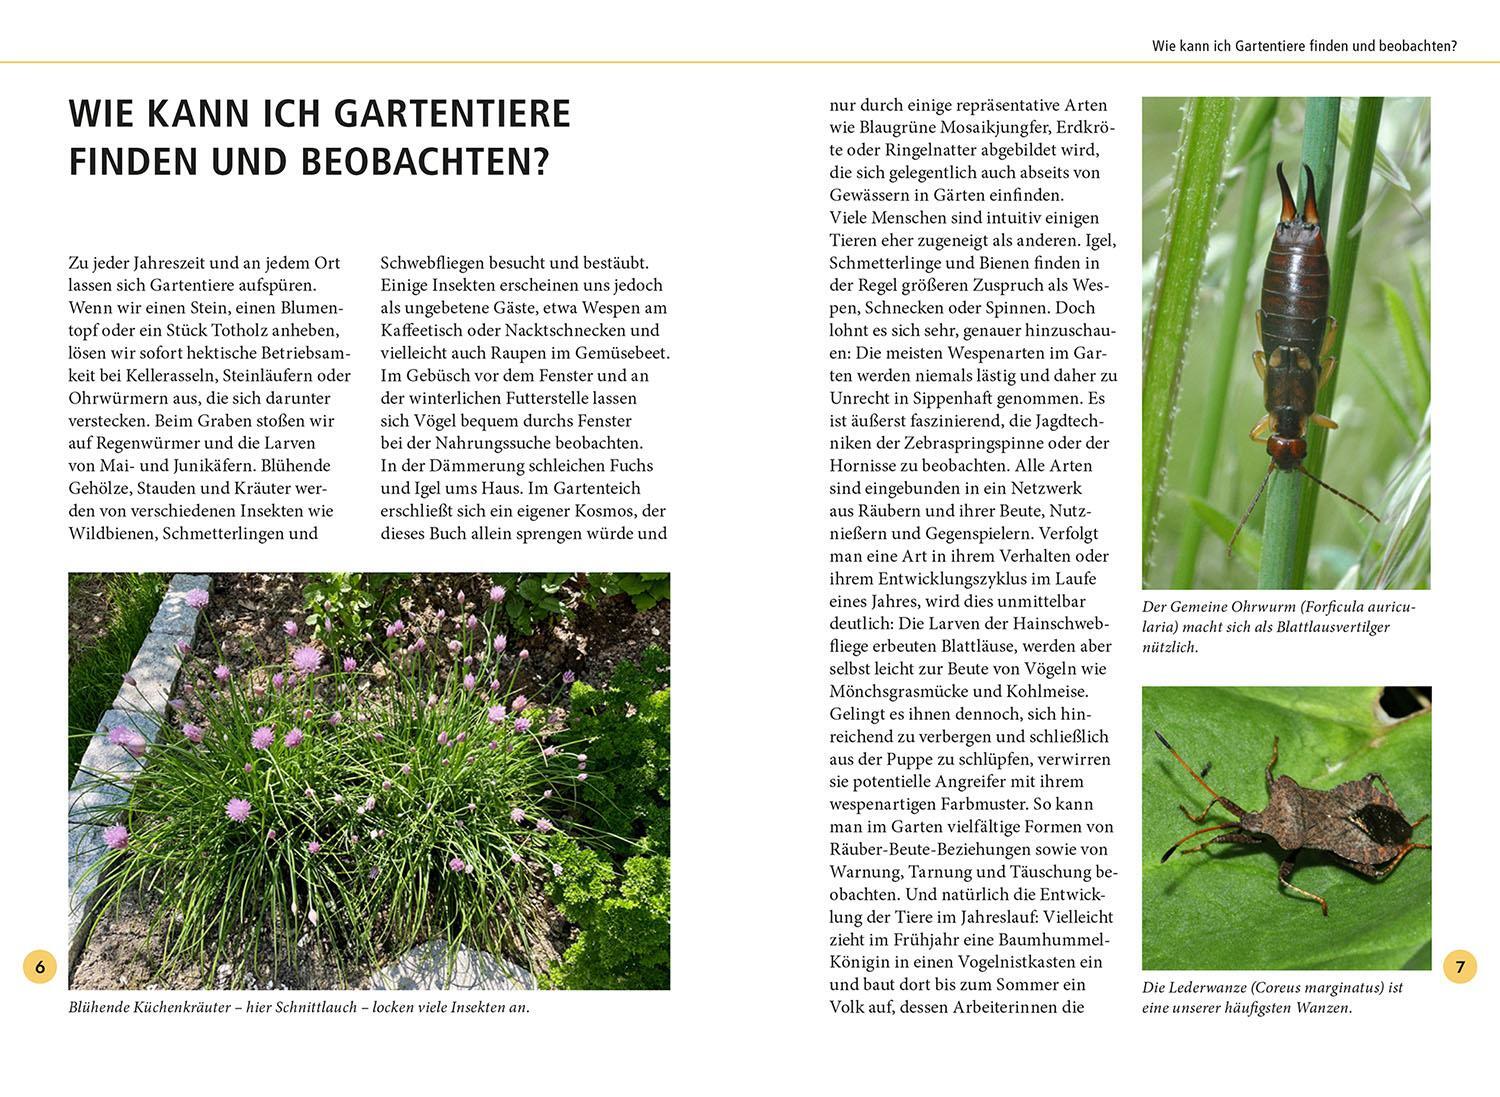 Bild: 9783440177761 | Gartentiere lebensgroß | Hannes Petrischak | Taschenbuch | 112 S.